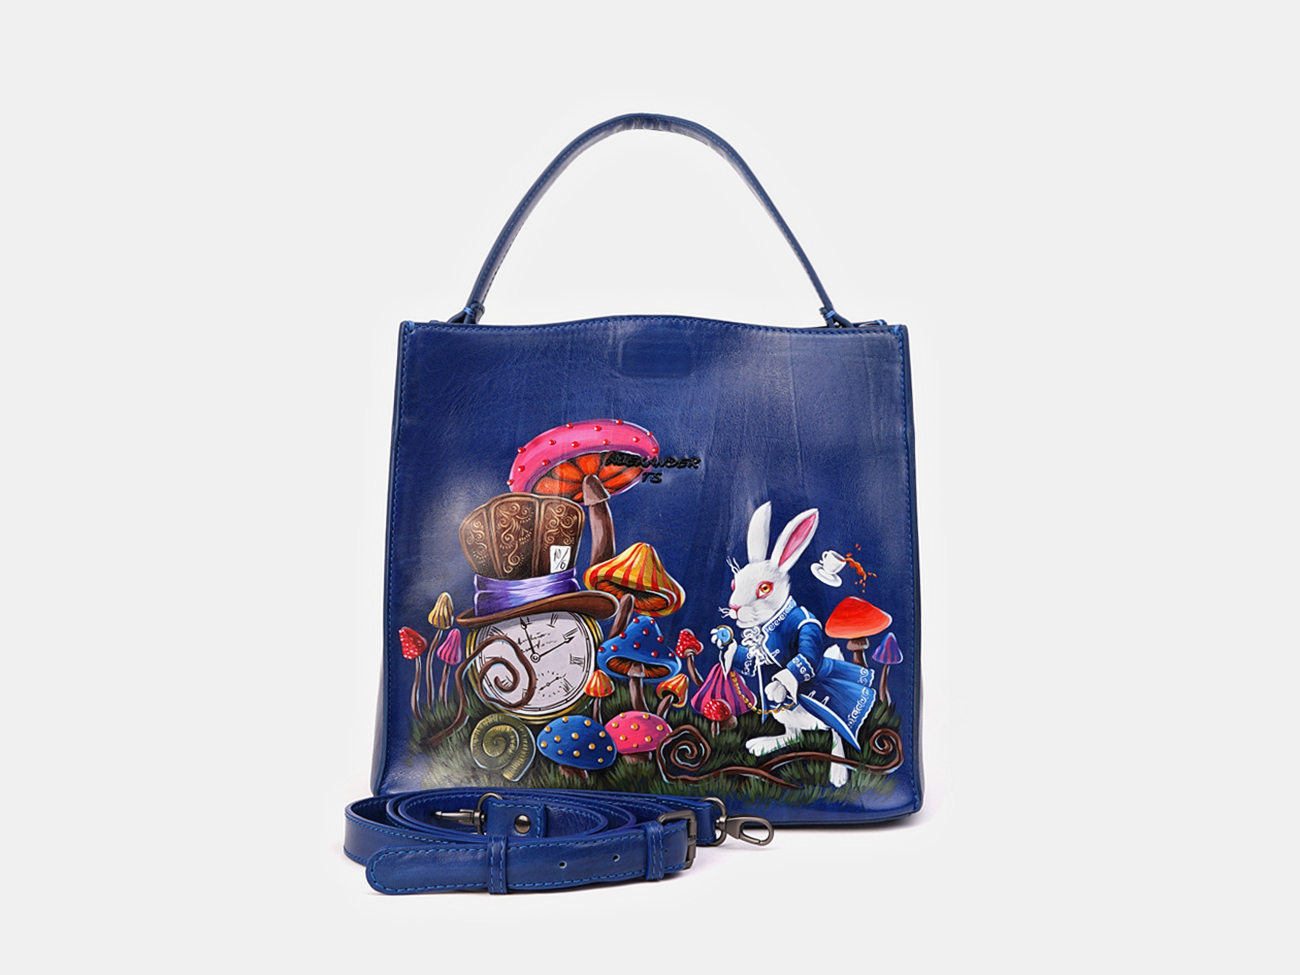 

Женская кожаная сумка "Алиса" (ярко-синяя), Разноцветный|синий, Сумка W0027 «Алиса»